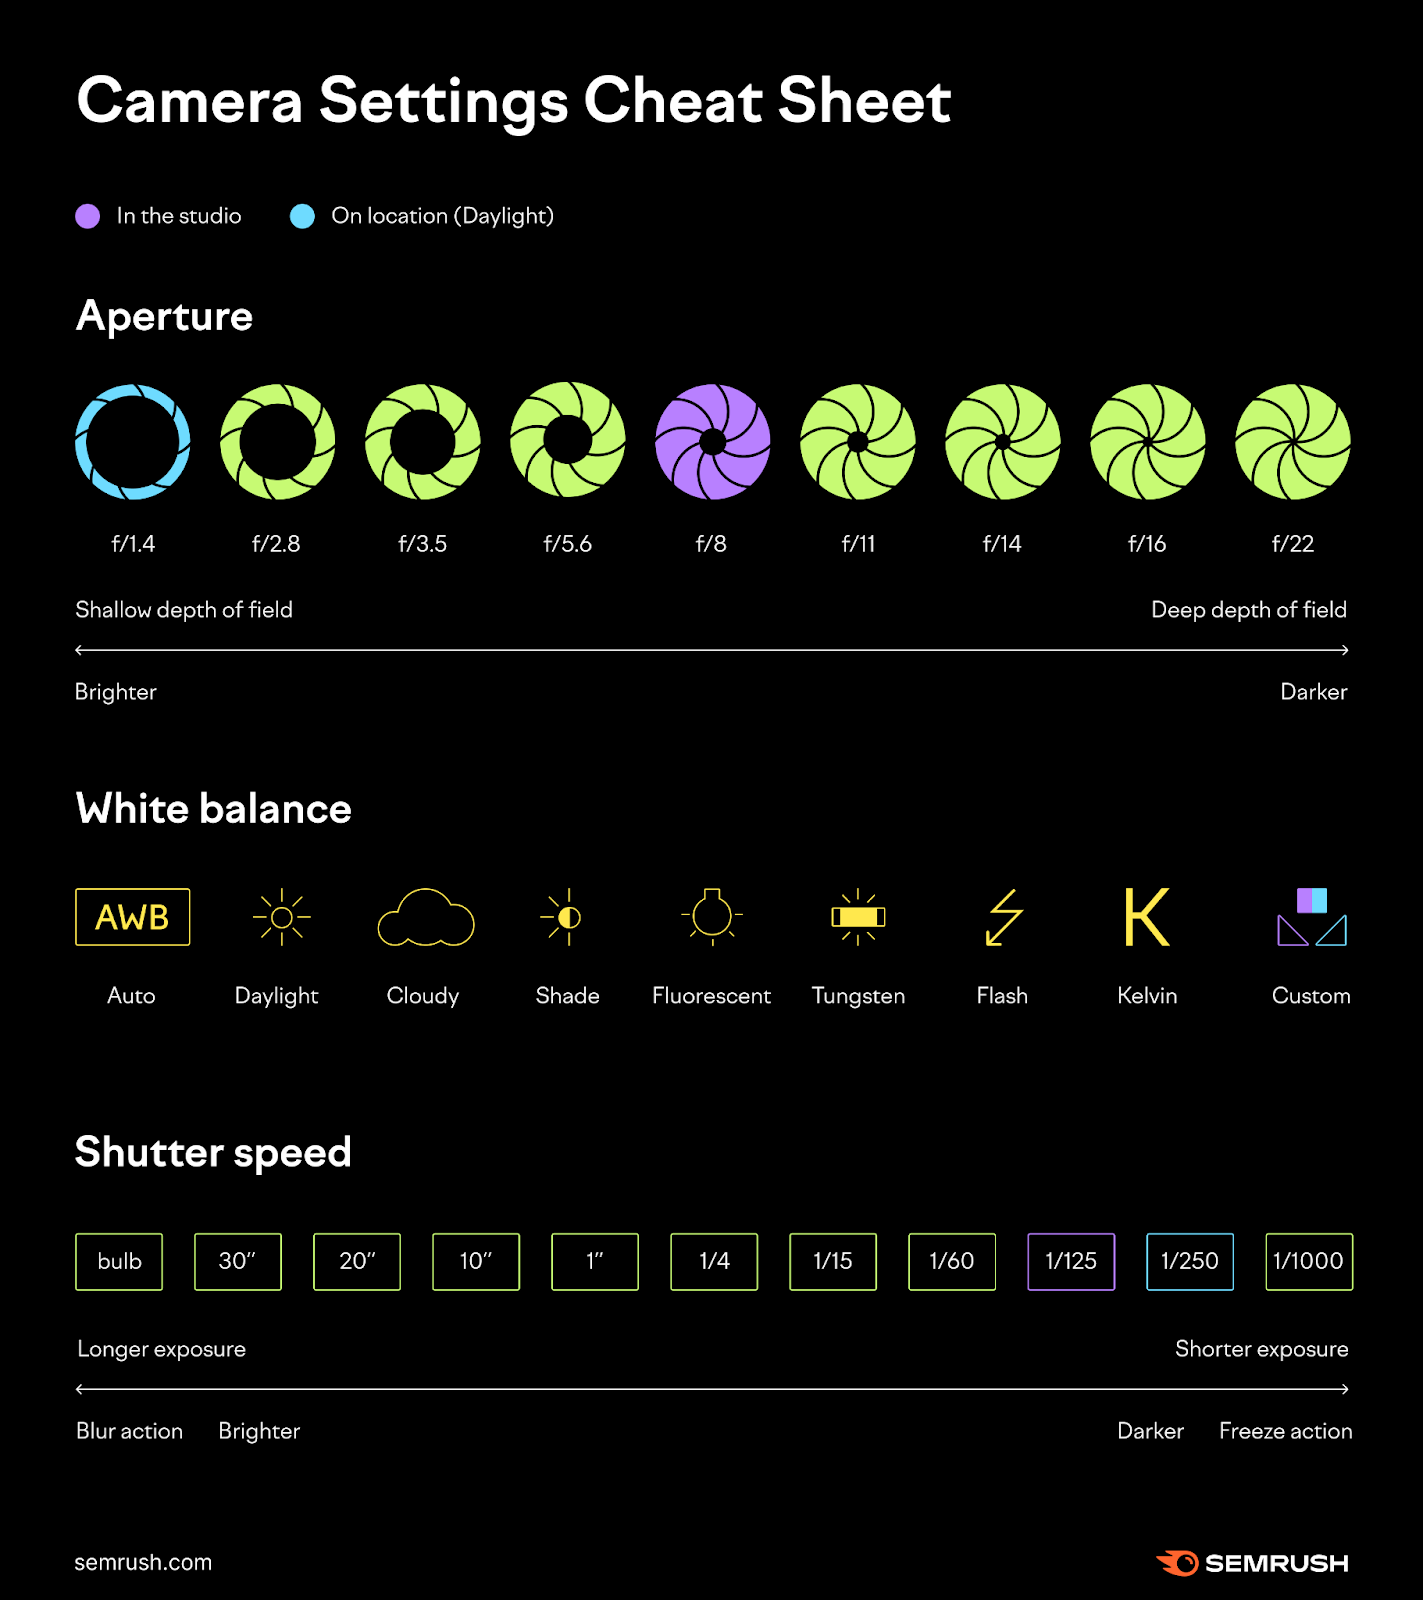 Camera settings cheat sheet by Semrush